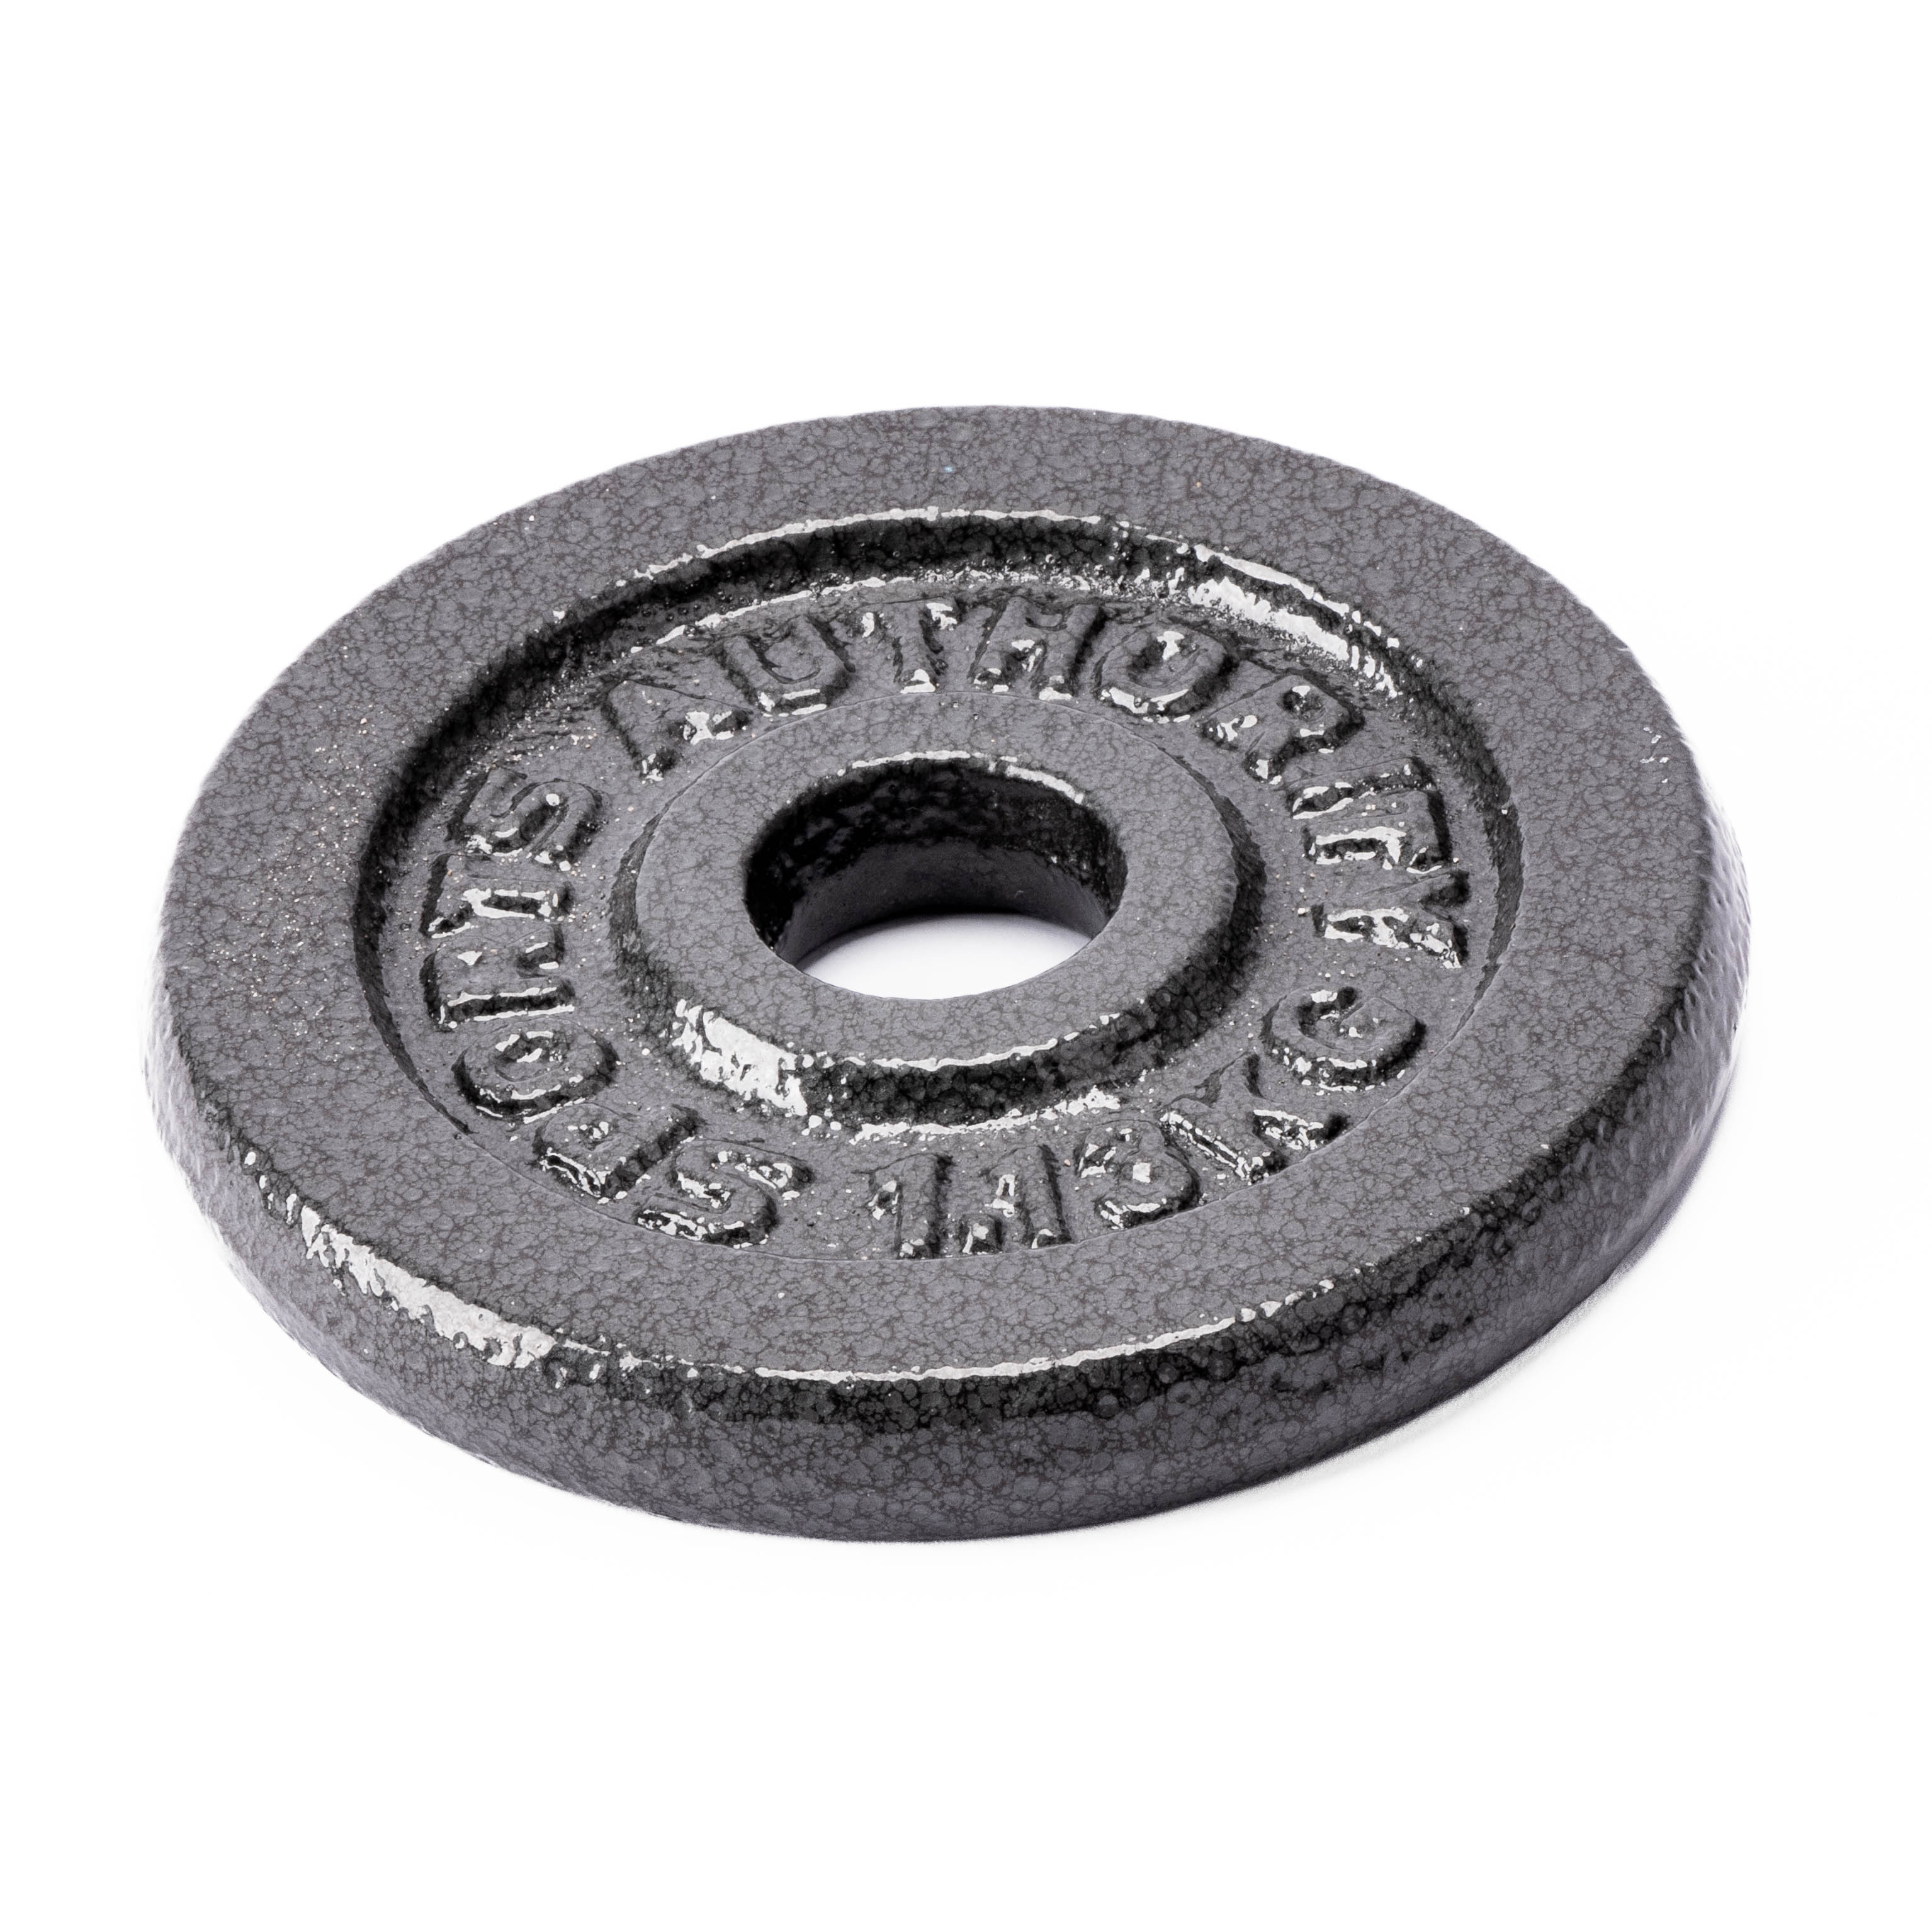 Disco metálico para barra pesas 2.5lb negro y gris